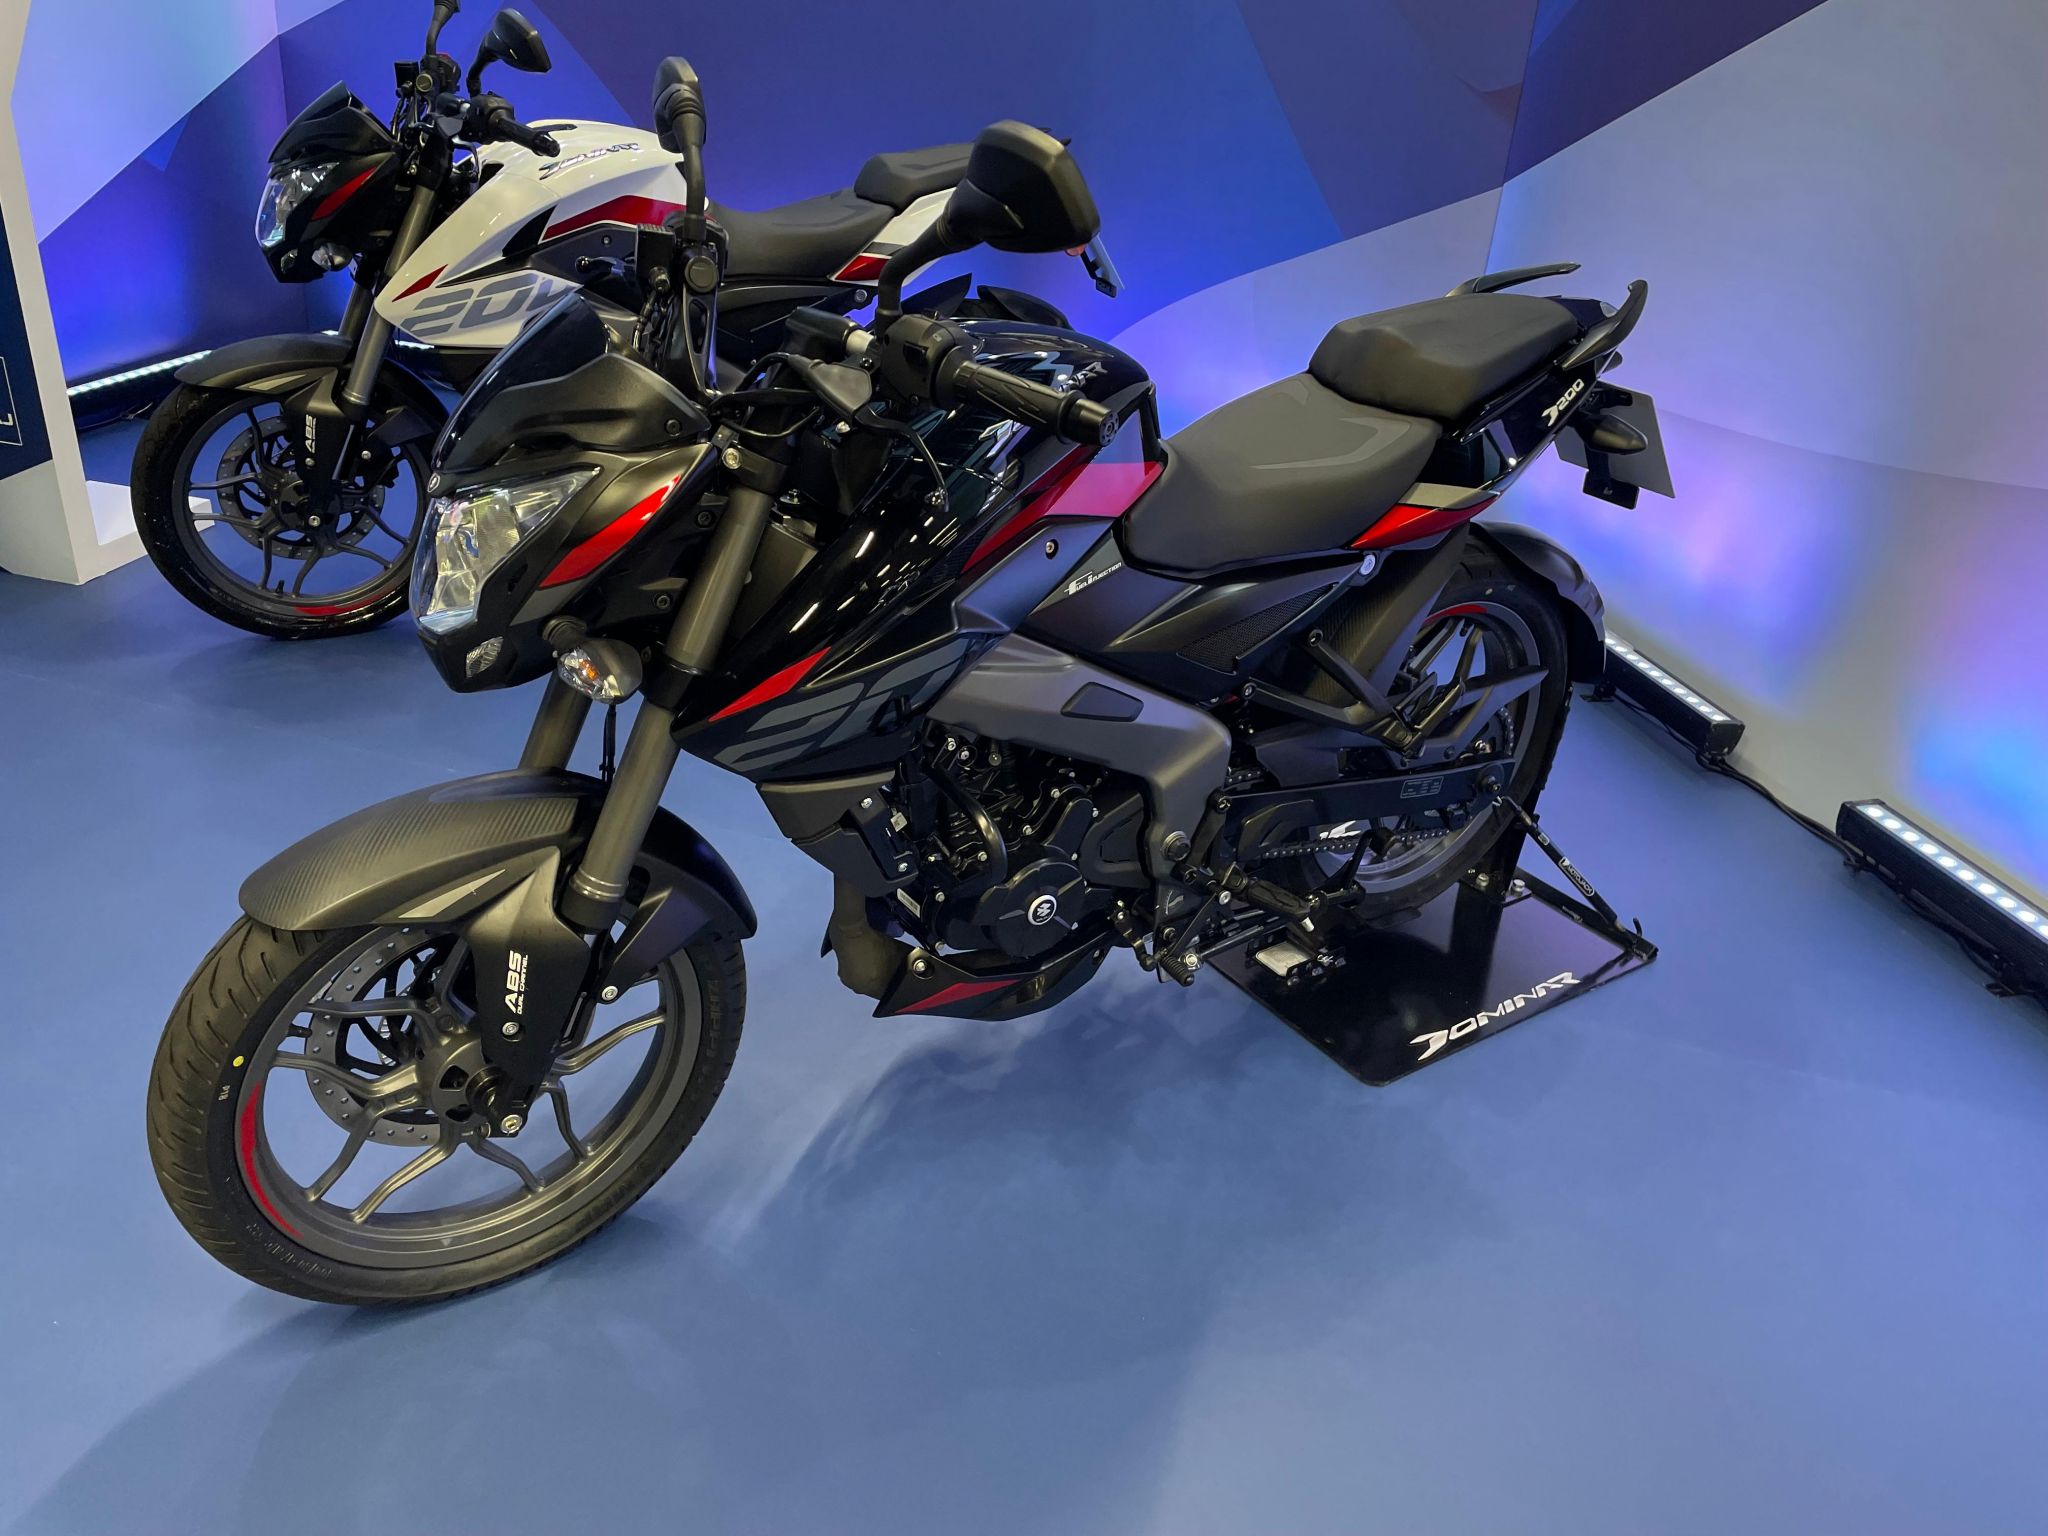 Fábrica da Bajaj inicia produção com motos atualizadas